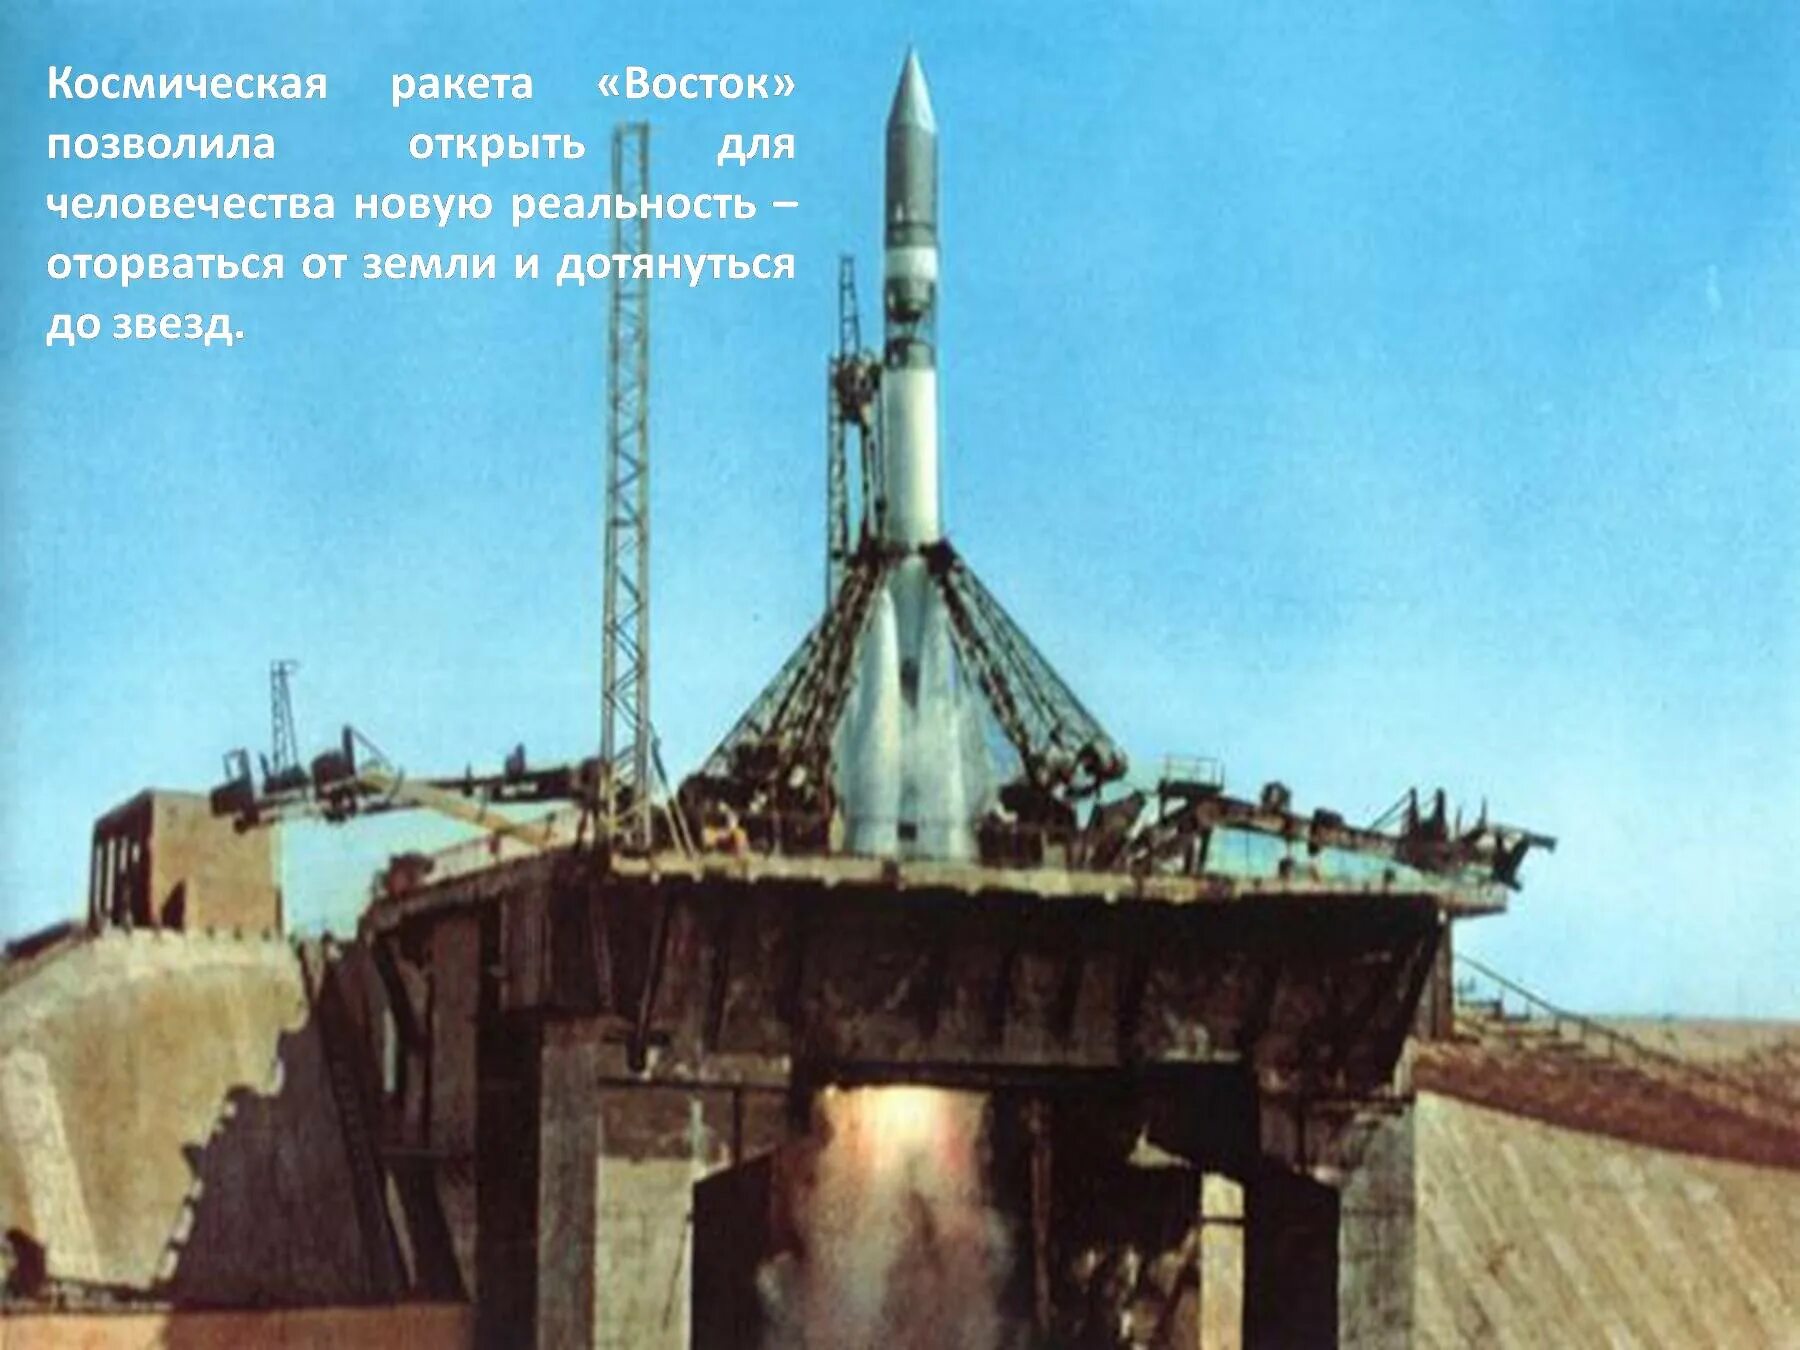 Космический корабль Восток Юрия Гагарина 1961. Космический корабль Гагарина Восток 1. Байконур Восток 1 1961. Байконур Восток 1 Гагарин.